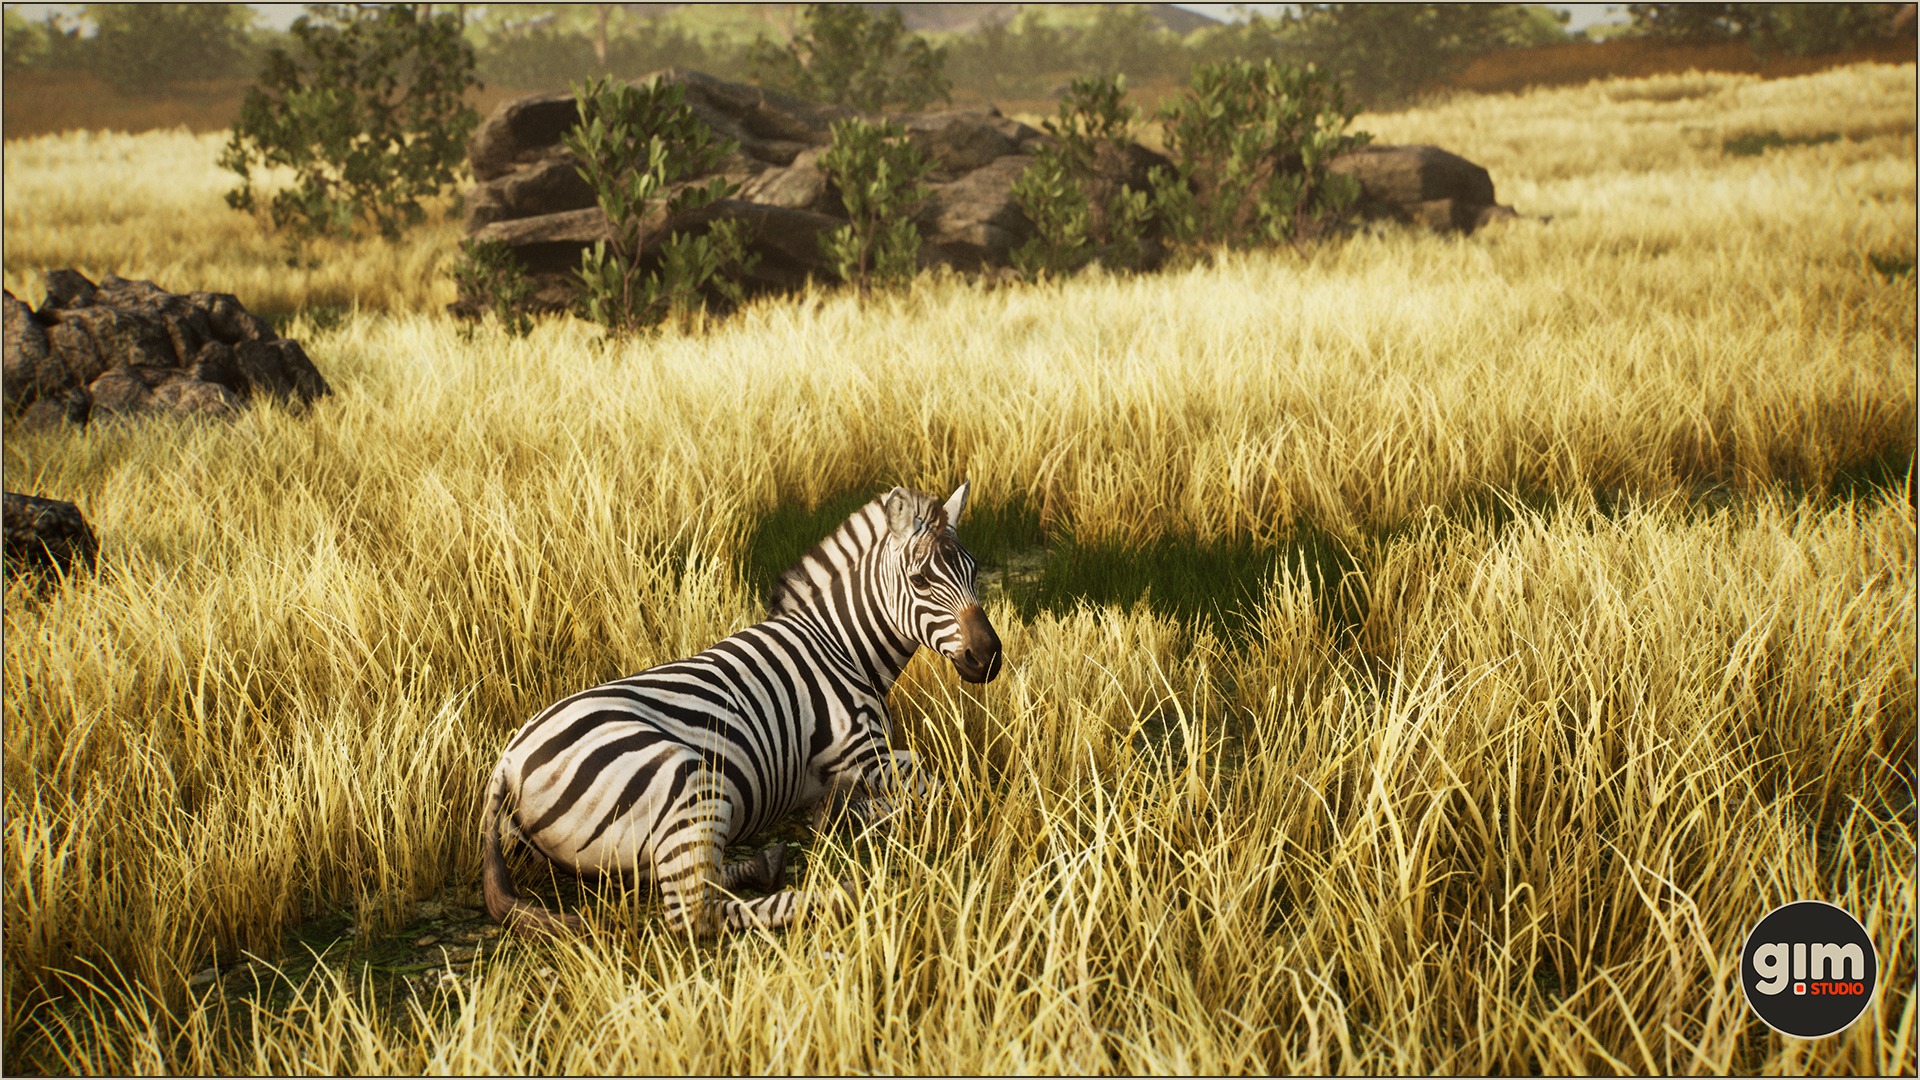 Zebra resting in the savanna